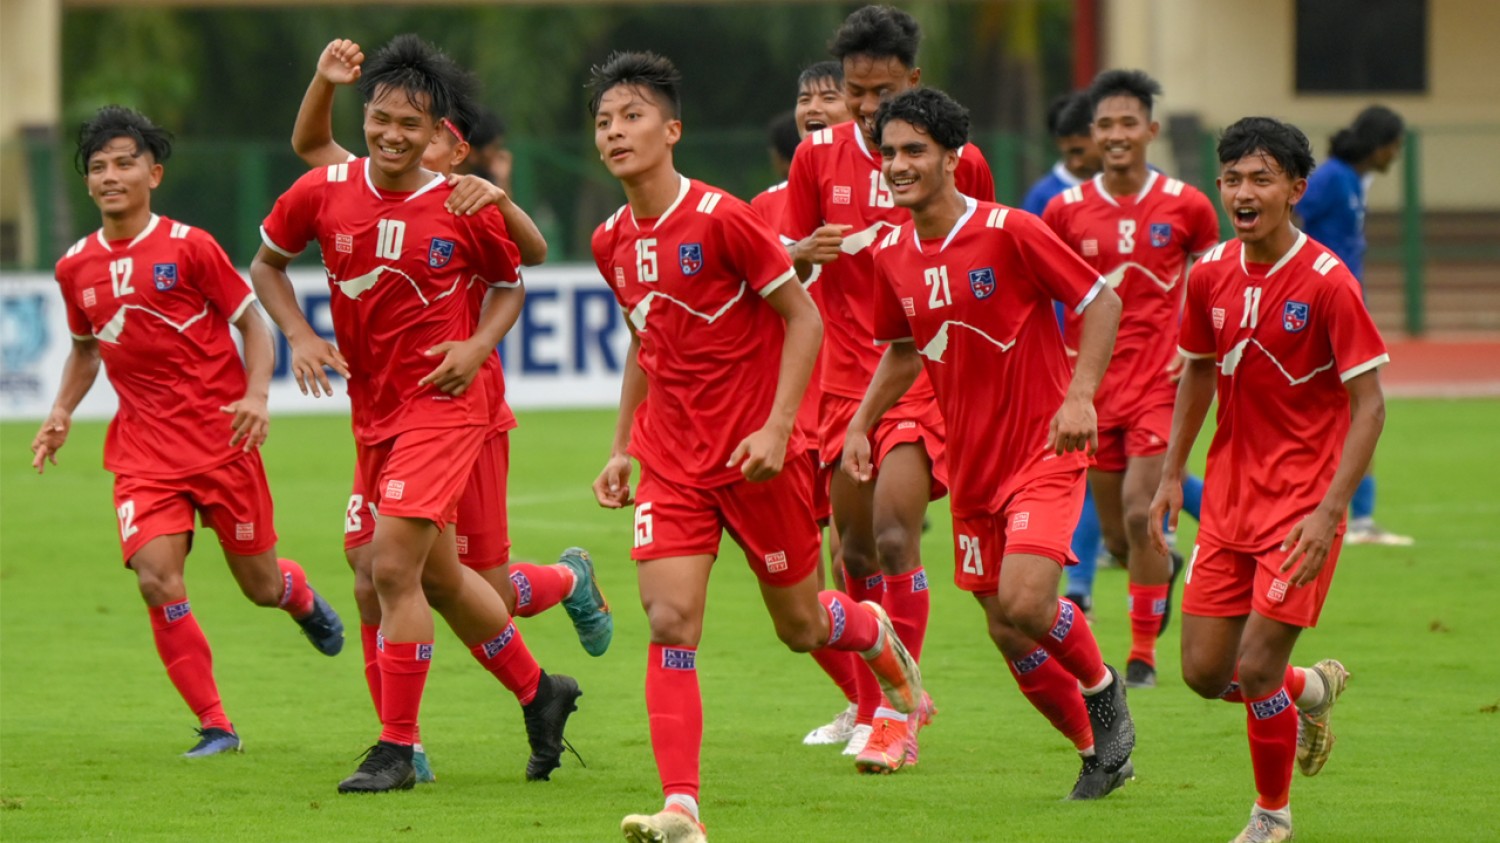 Nepal thump Maldives in SAFF U-20 opener